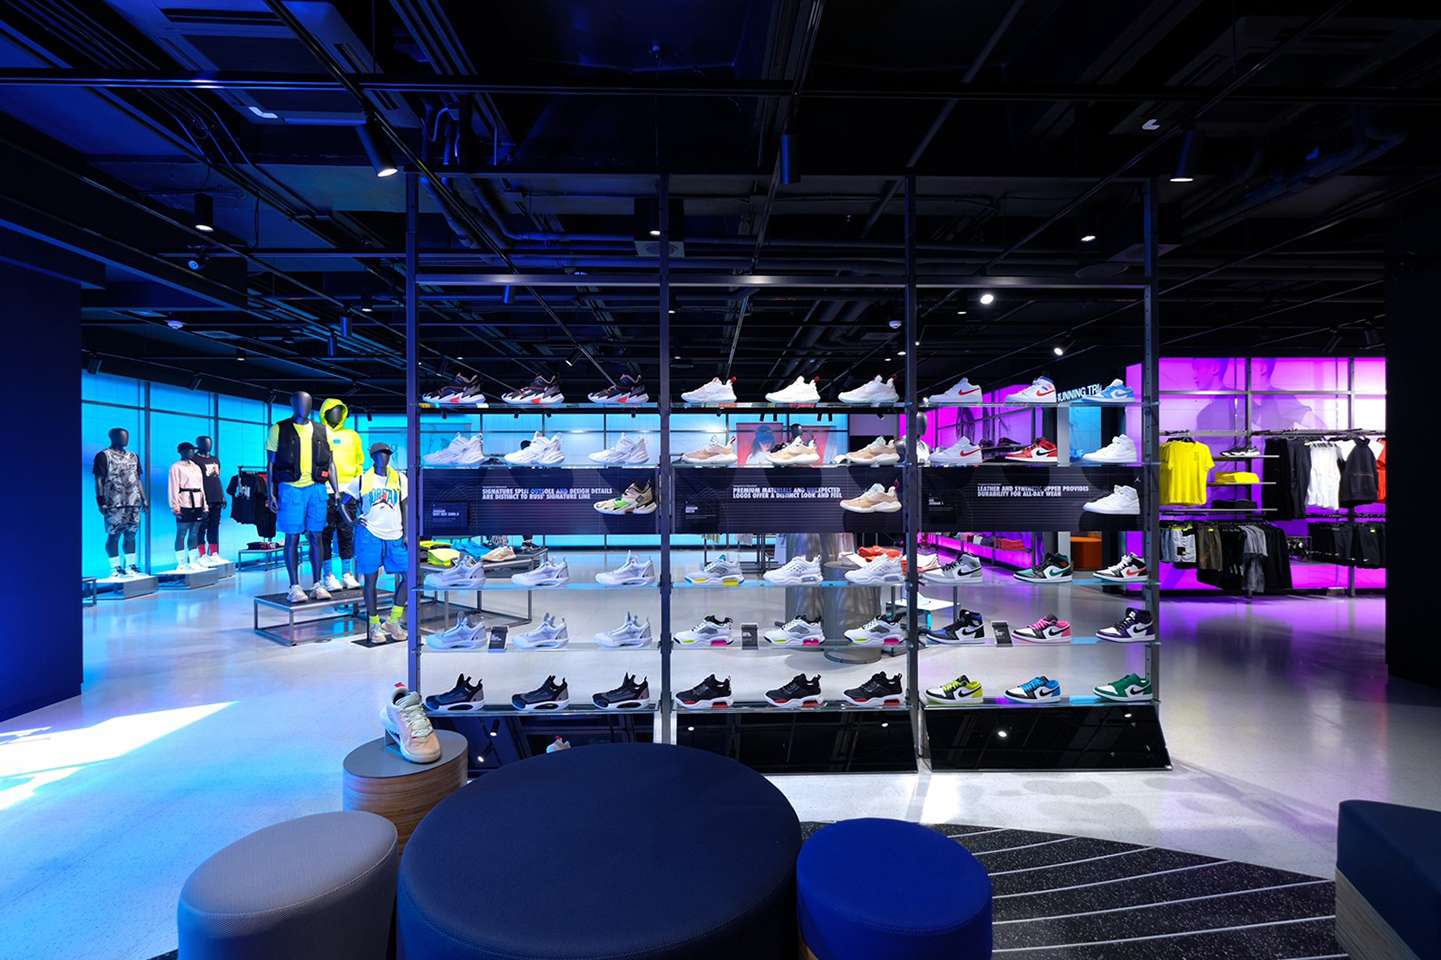 Fashion, Nike, Nike Bangkok, ไนกี้, กรุงเทพฯ, ประเทศไทย, Nike by You, ช็อปไนกี้, ร้านไนกี้, รองเท้า, เสื้อผ้า, เครื่องประดับ, Siam Center, สยามเซ็นเตอร์